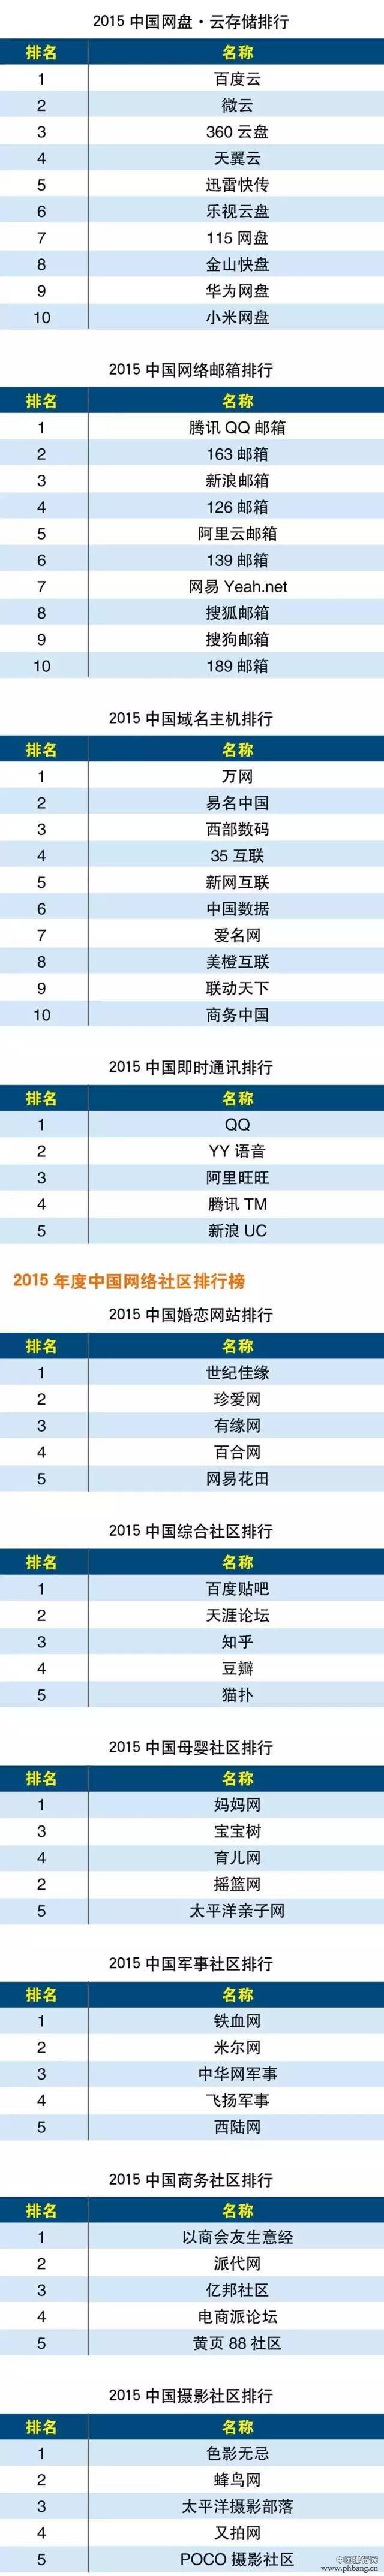 2015年度中国互联网分类排行榜